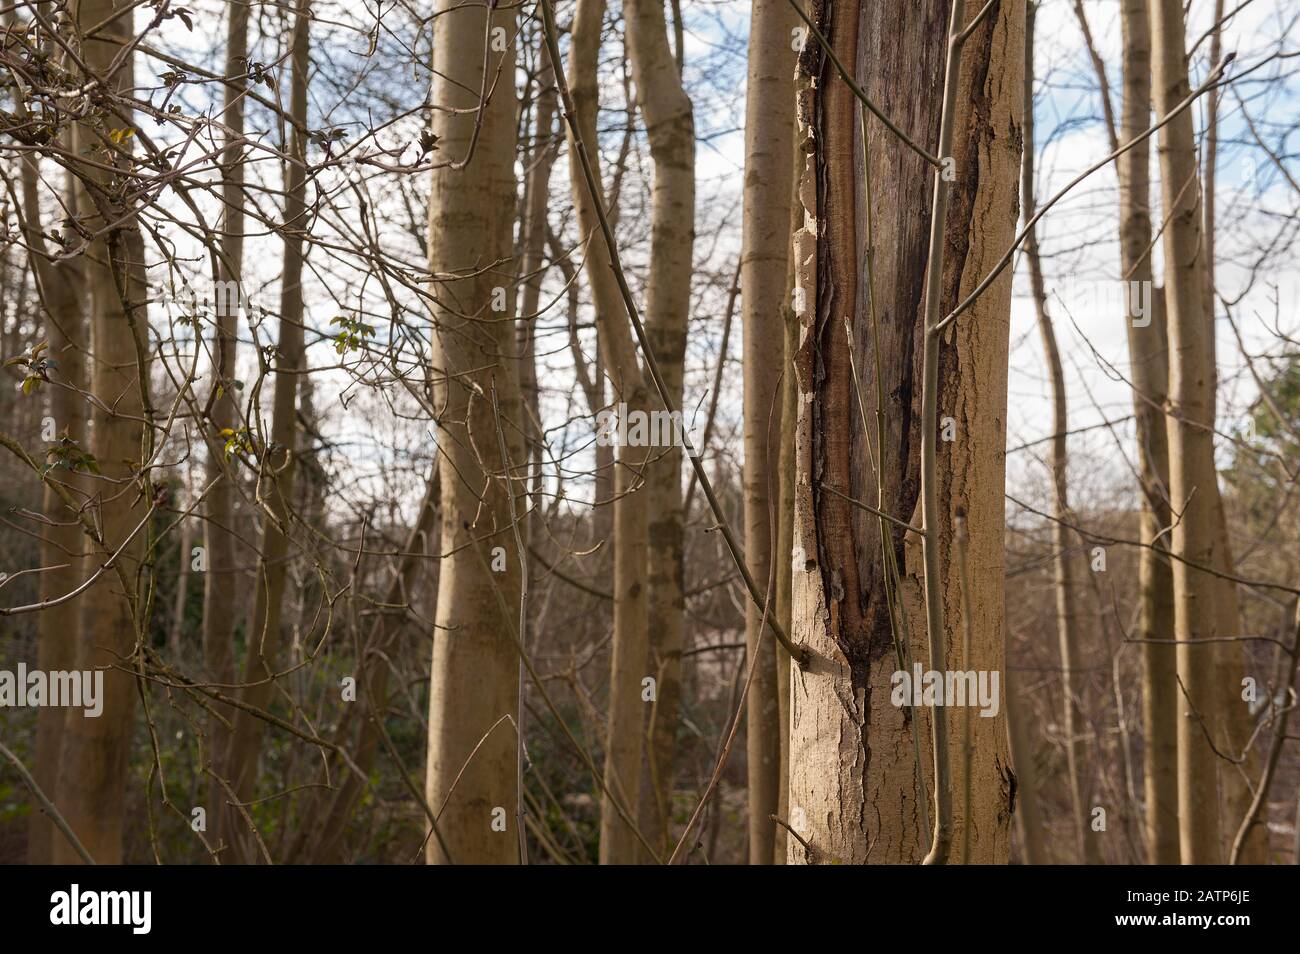 Arbre à cendres mature souffrant de maladie et dépérissant avec écorce commençant à peler le tronc à un jeune arbre de 14 m de haut et tronc mûr à fourré de 25 m de haut Banque D'Images